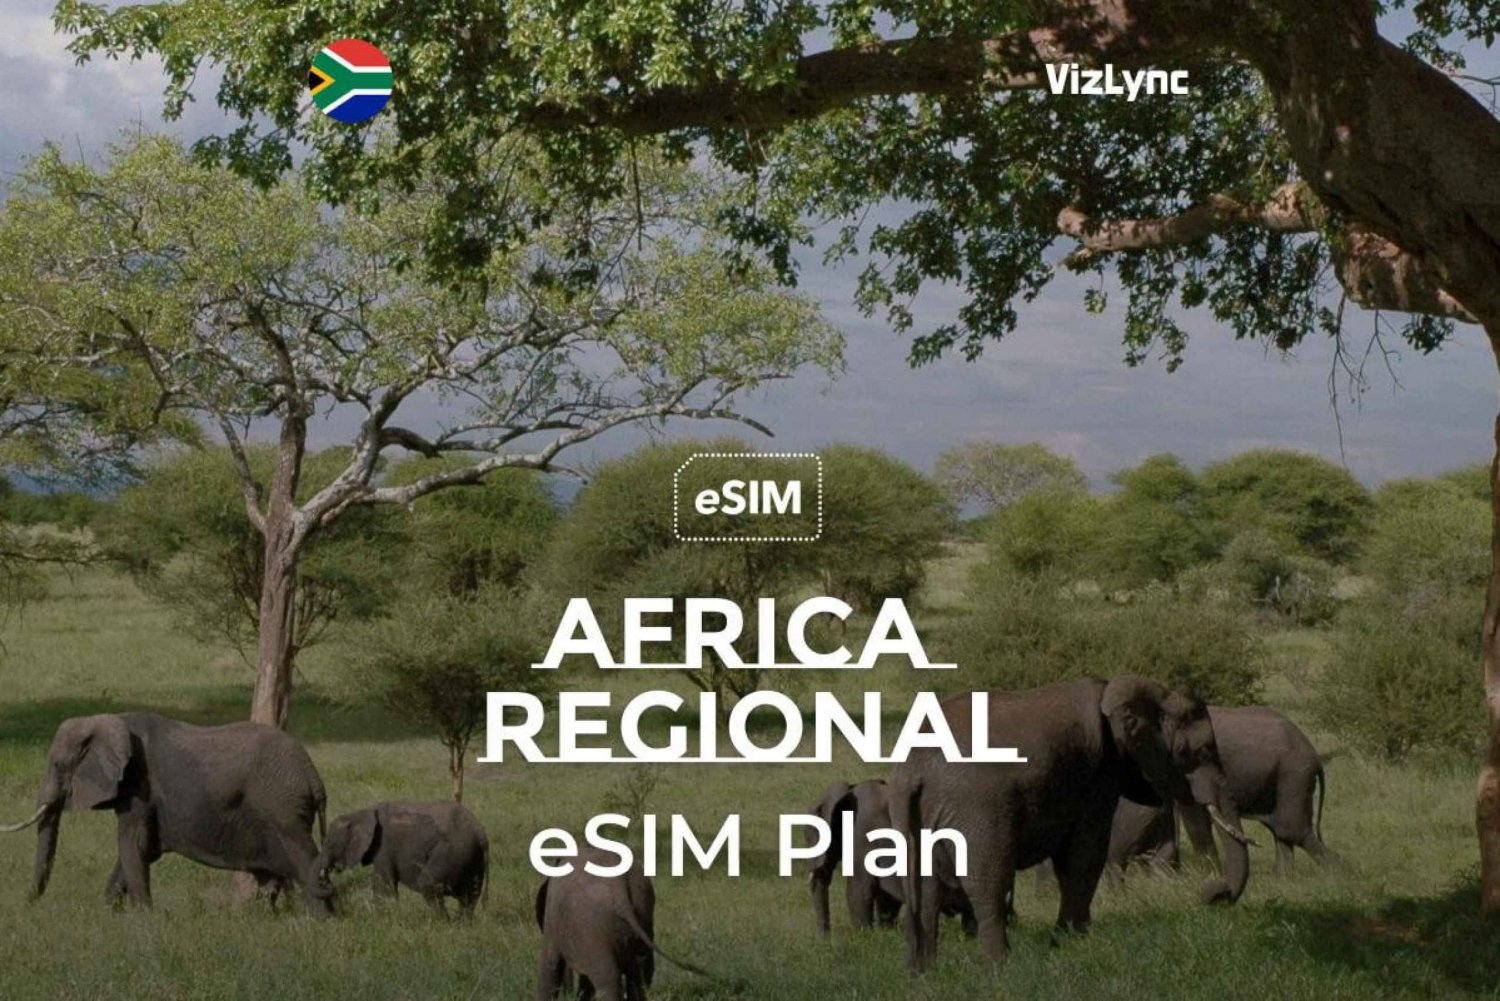 Beste e-reissimkaart voor Afrika met 10 GB data gedurende 30 dagen'